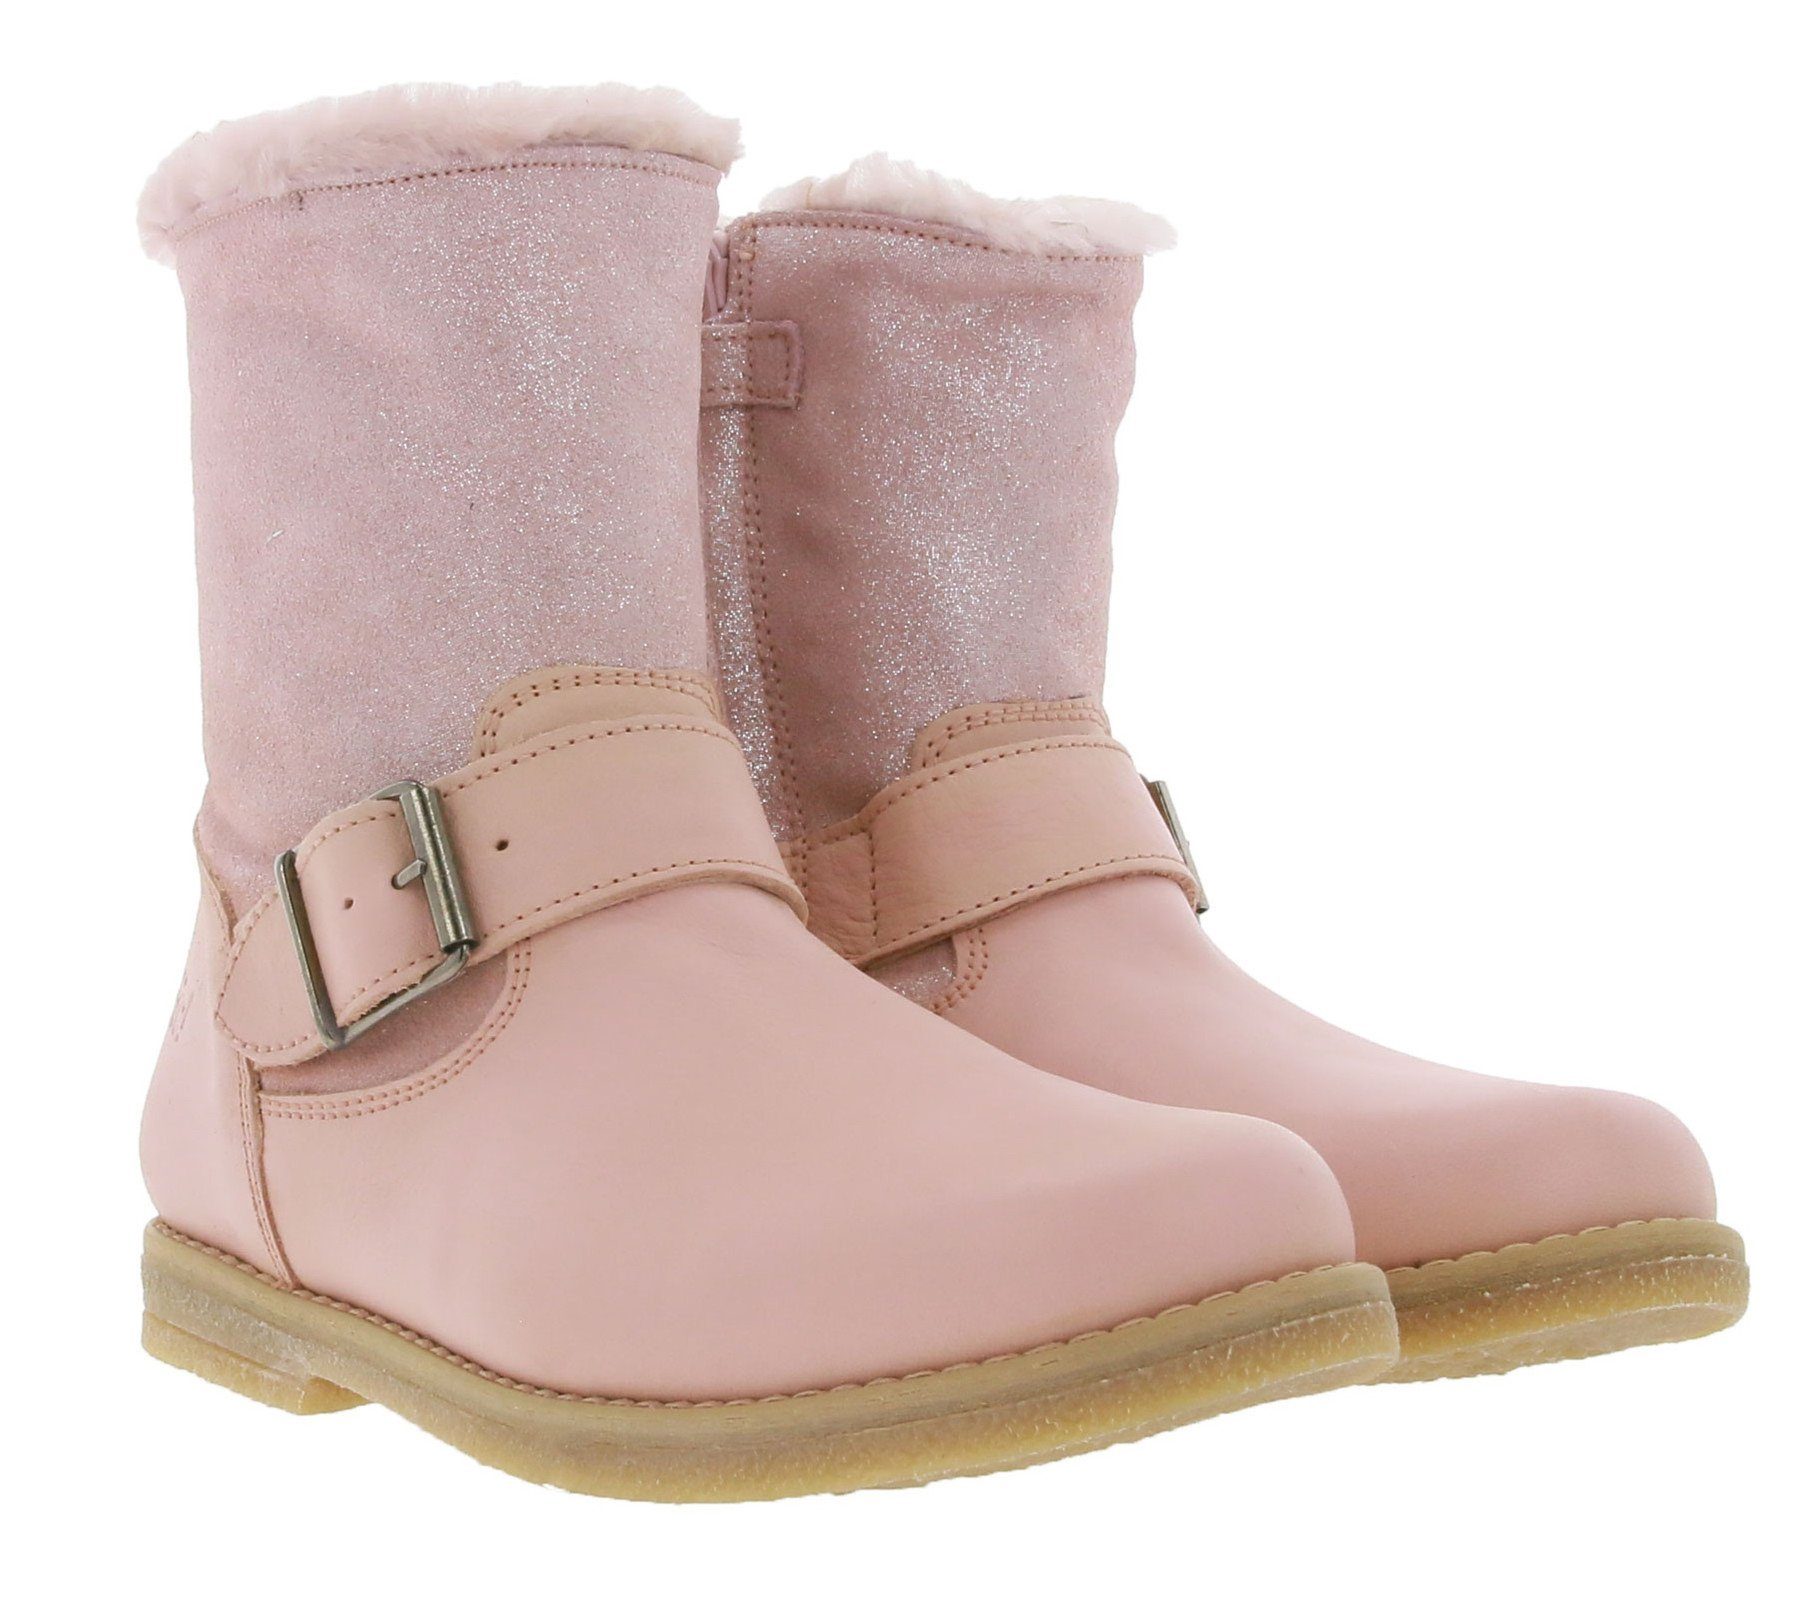 Clic »clic! Cathay Boreal Echtleder-Stiefel bequeme Kinder Boots mit  Lammfell-Fütterung Winter-Schuhe Rosa« Stiefel online kaufen | OTTO